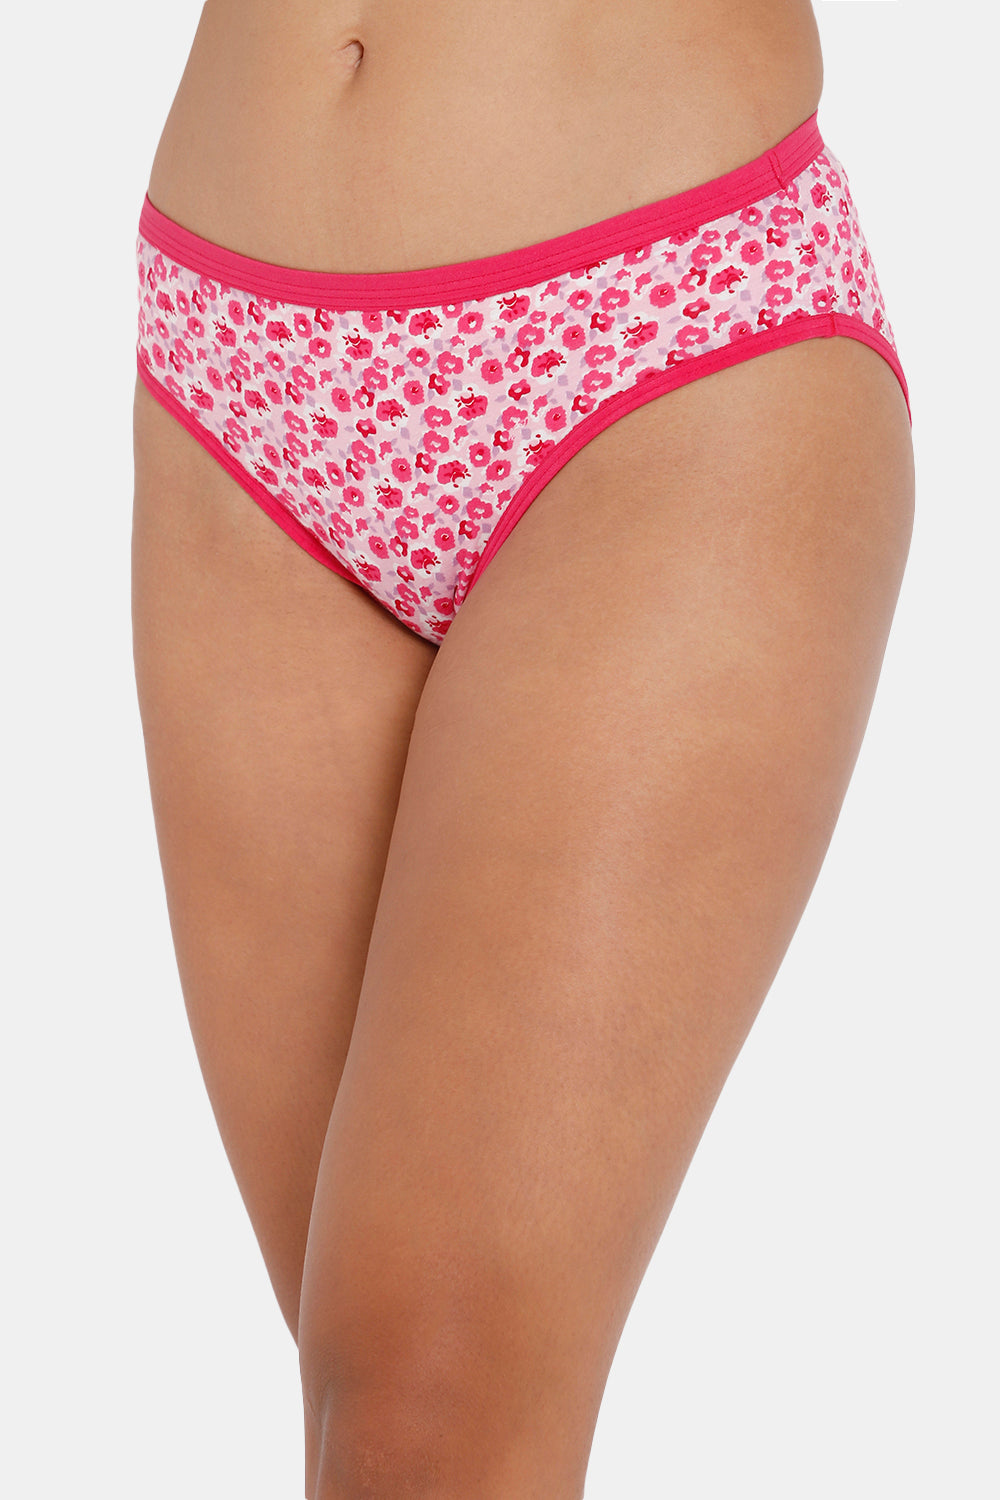 Intimacy Bikini Dark Printed Panty - Outer Elastic -Pack of 3 Size   M Color REGULAR_PANTIES